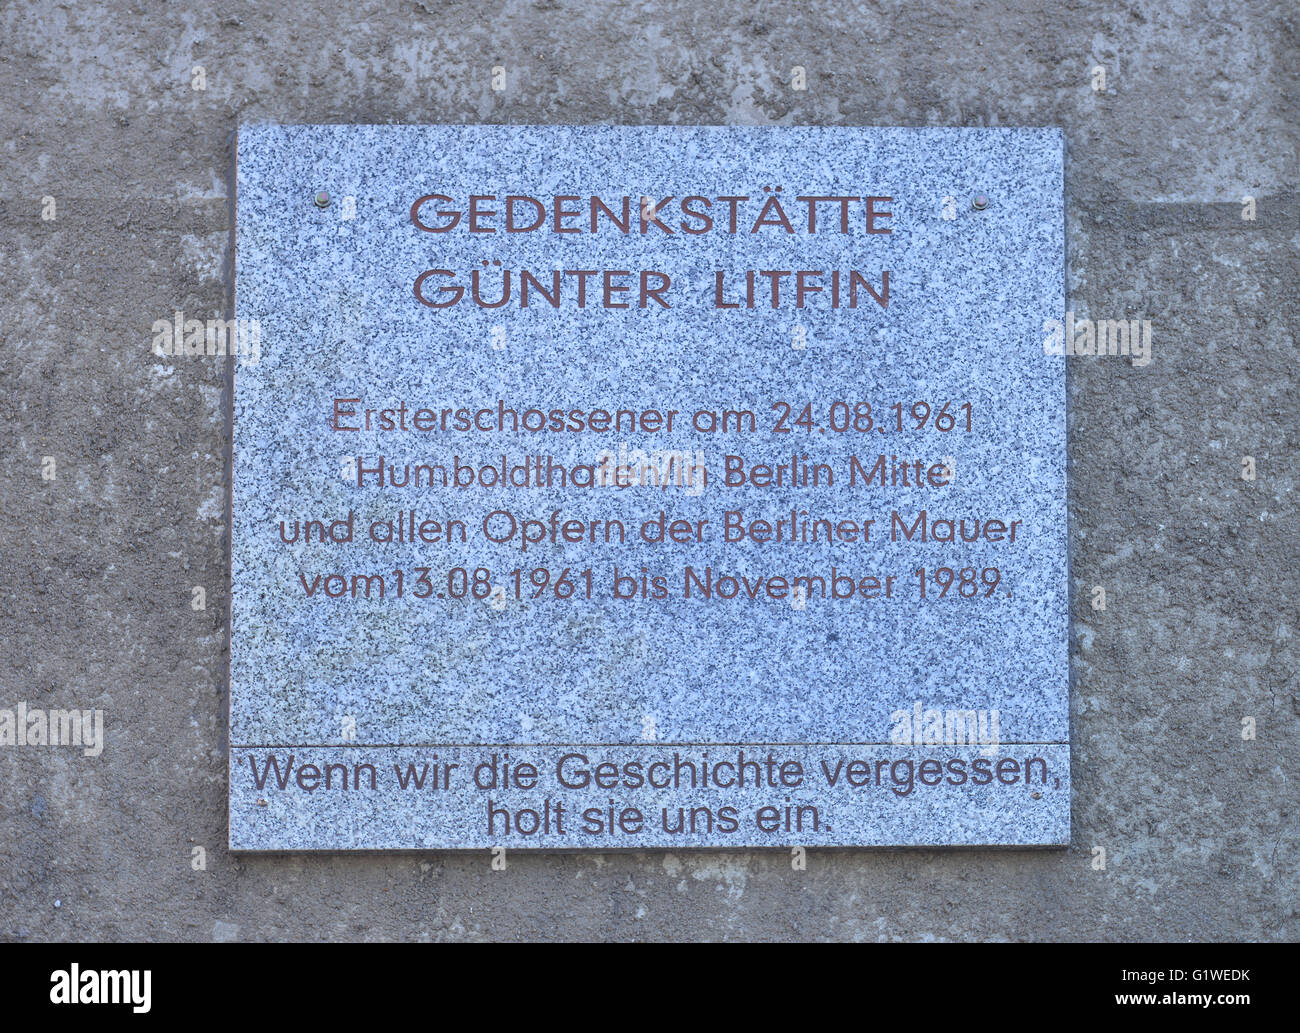 Gedenkstaette, Guenter Litfin, Kieler Strasse, Mitte, Berlin, Deutschland Banque D'Images